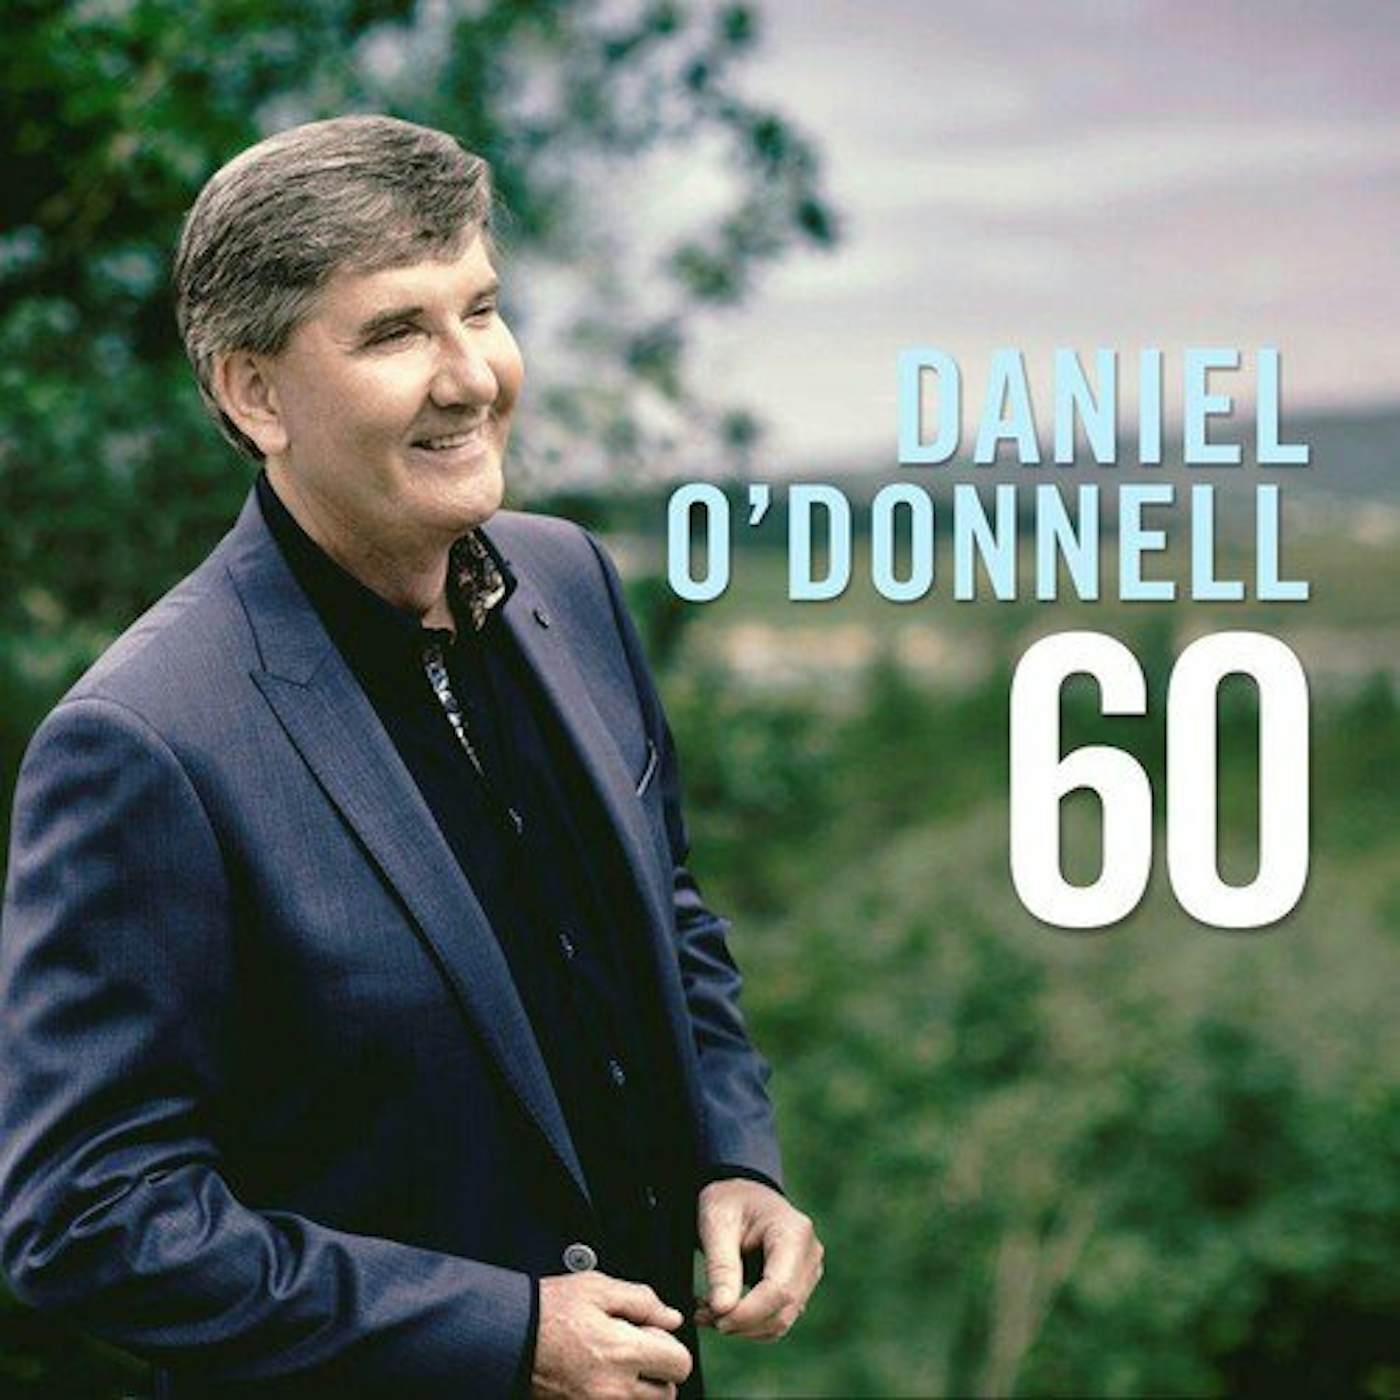 Daniel O'Donnell 60 Vinyl Record